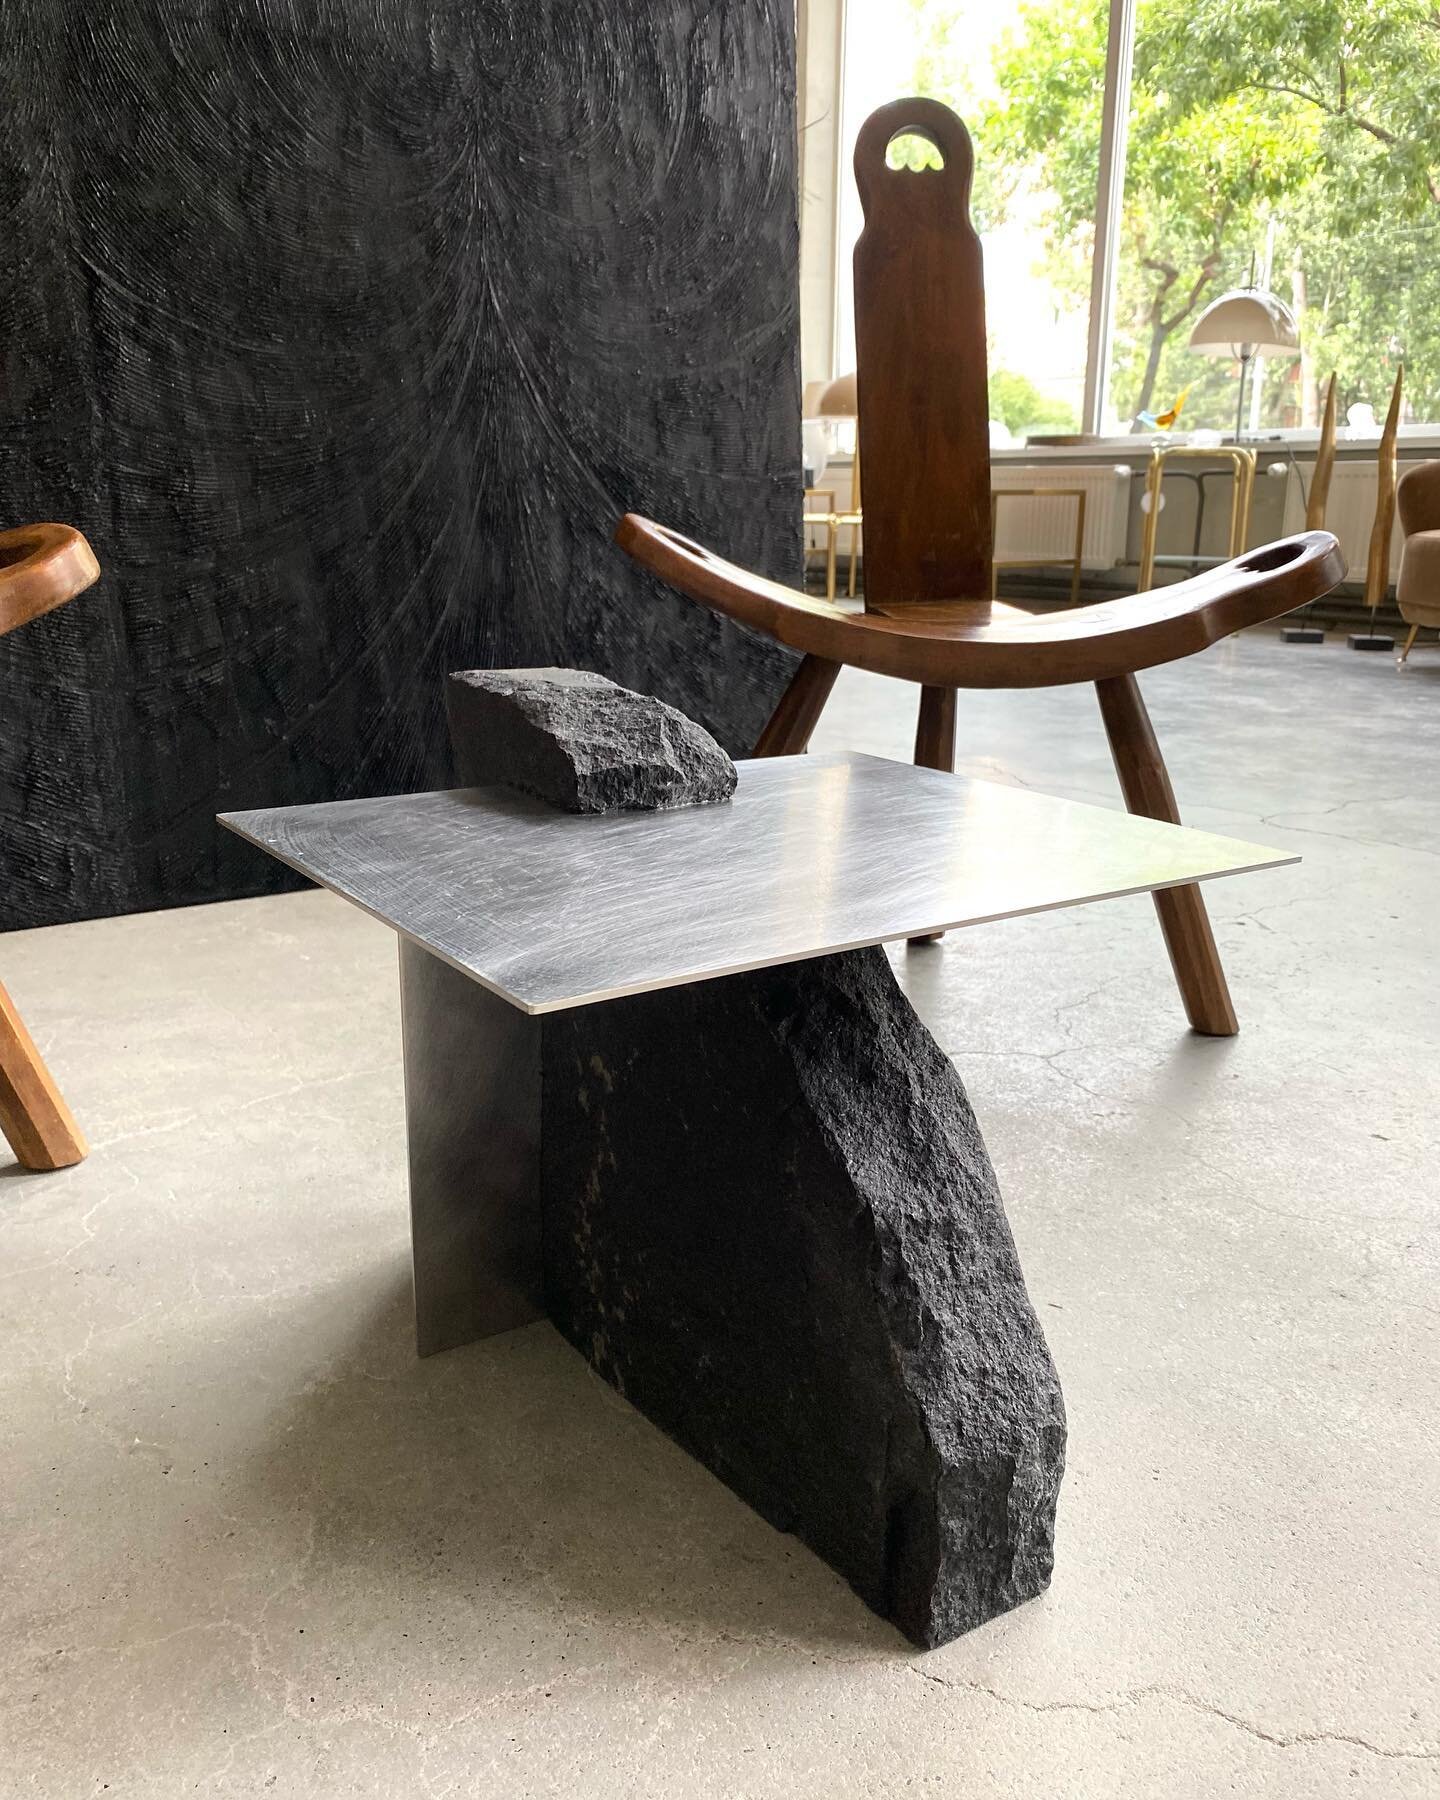 💥TABLE M💥

Black granite/steel

 size: 48cm x 45cm h.45cm

@petramarkstudio x @r_k_selection

#dve_petra_romi

info📩: DM